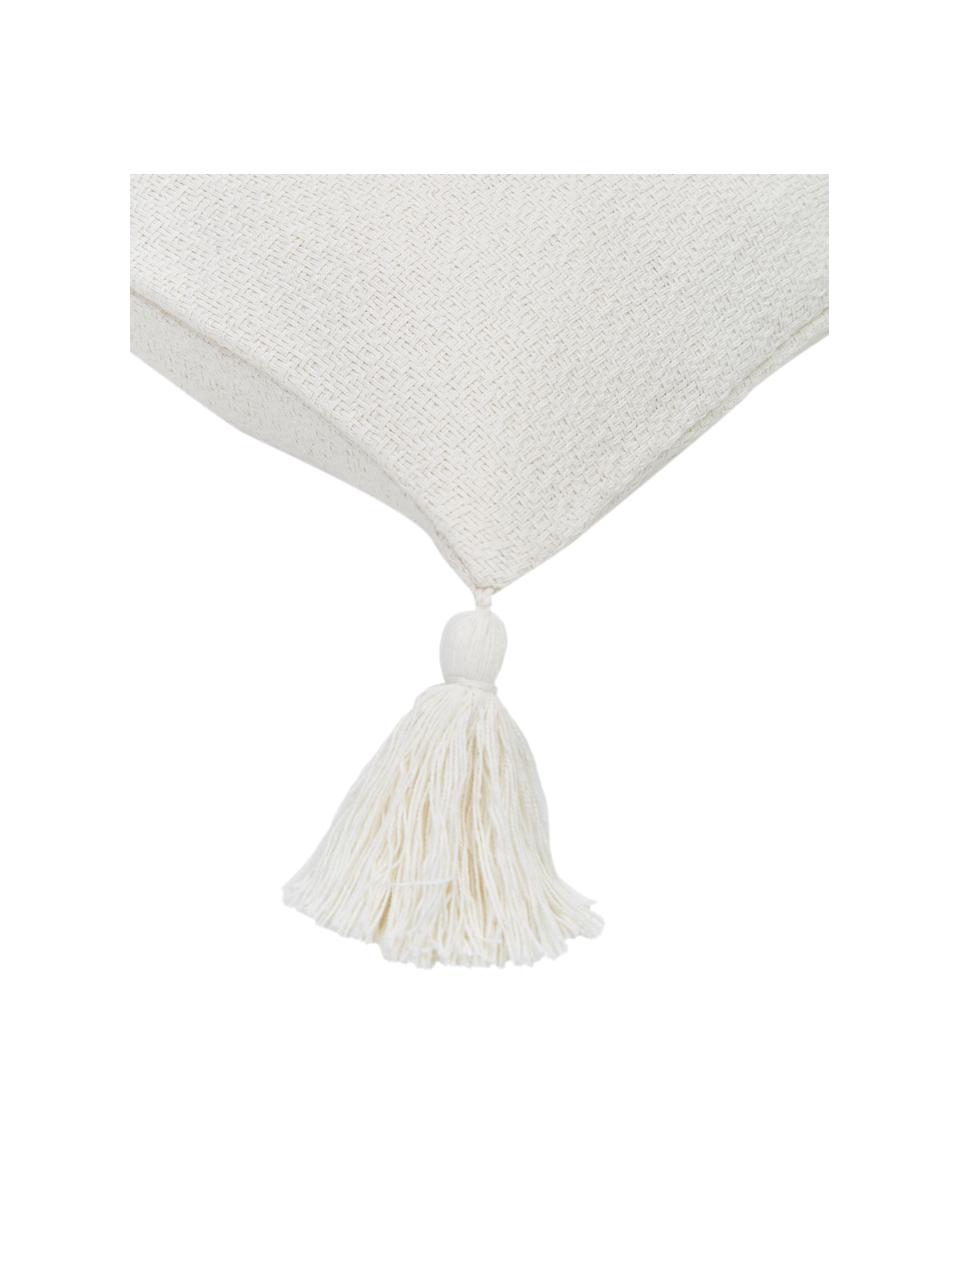 Federa arredo color bianco crema con nappe decorative Lori, 100% cotone, Bianco crema, Larg. 40 x Lung. 40 cm